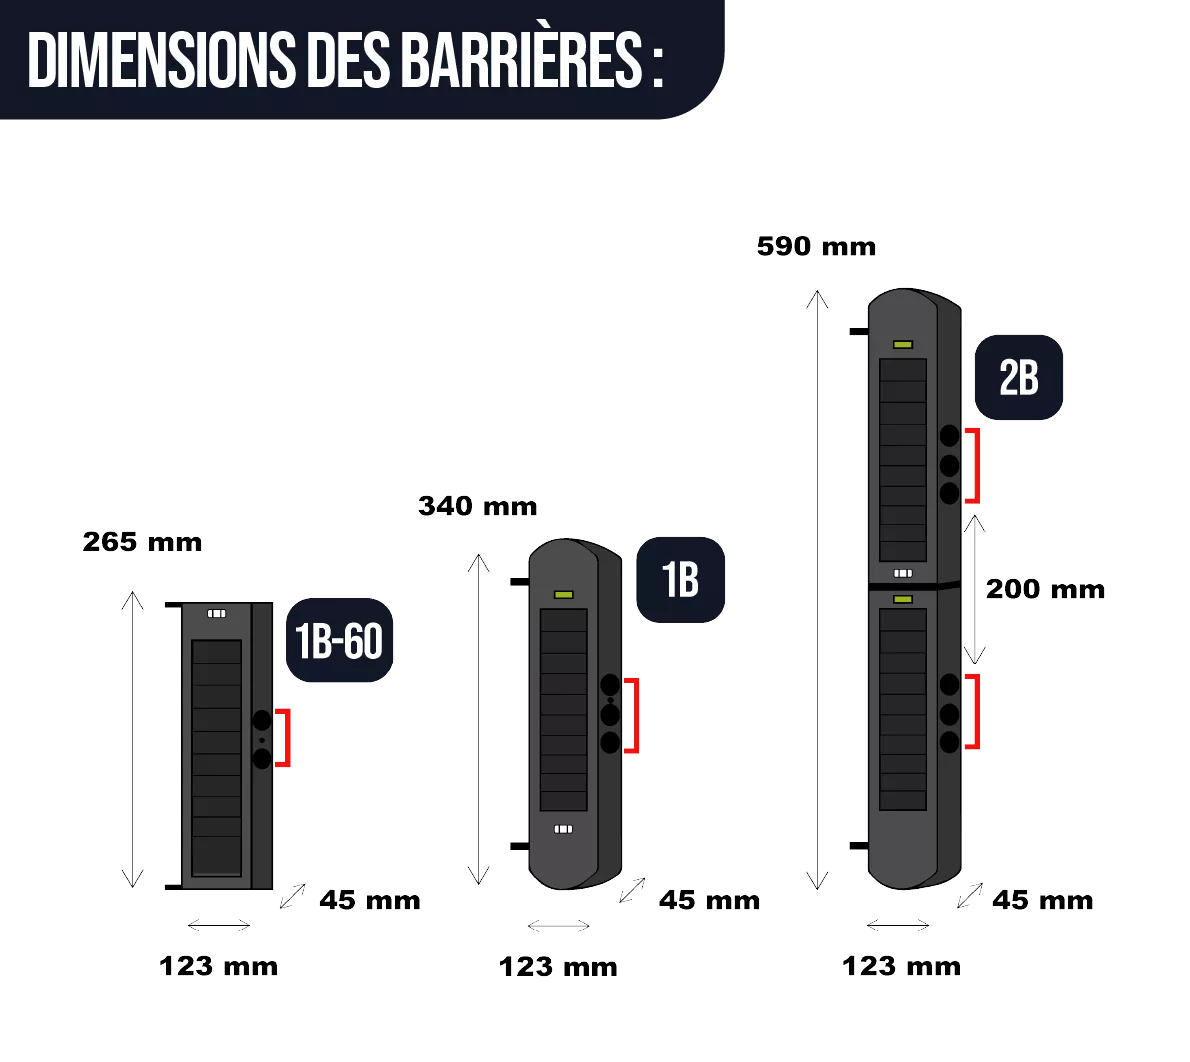 Nos différentes tailles de barrières 1B, 1B-60 et 2B